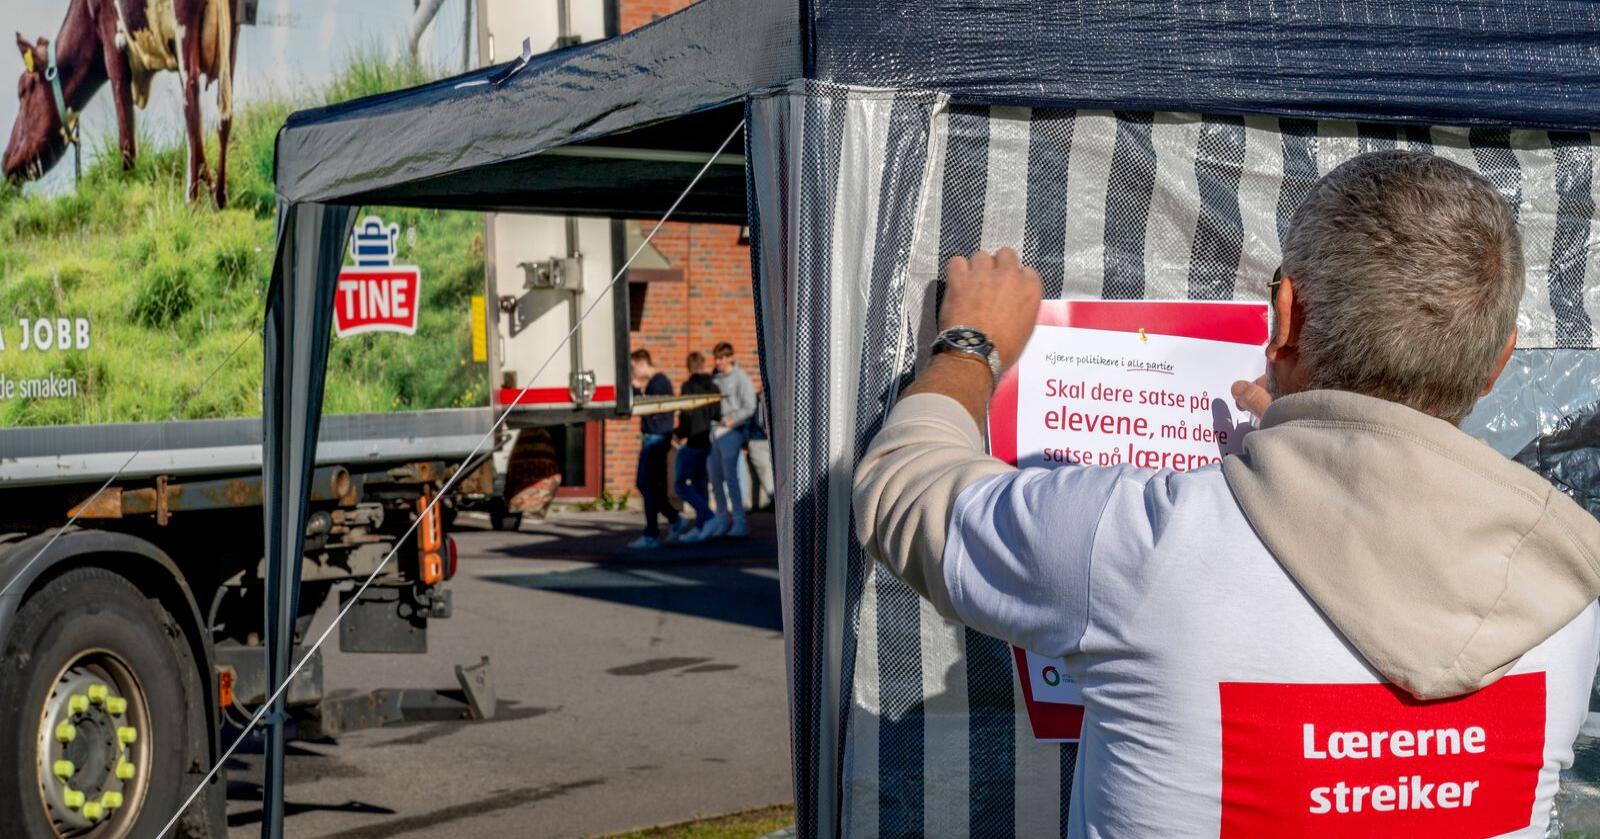 Lærere på Lillestrøm henger opp plakater for å informere om streiken. Foto: Gorm Kallestad / NTB